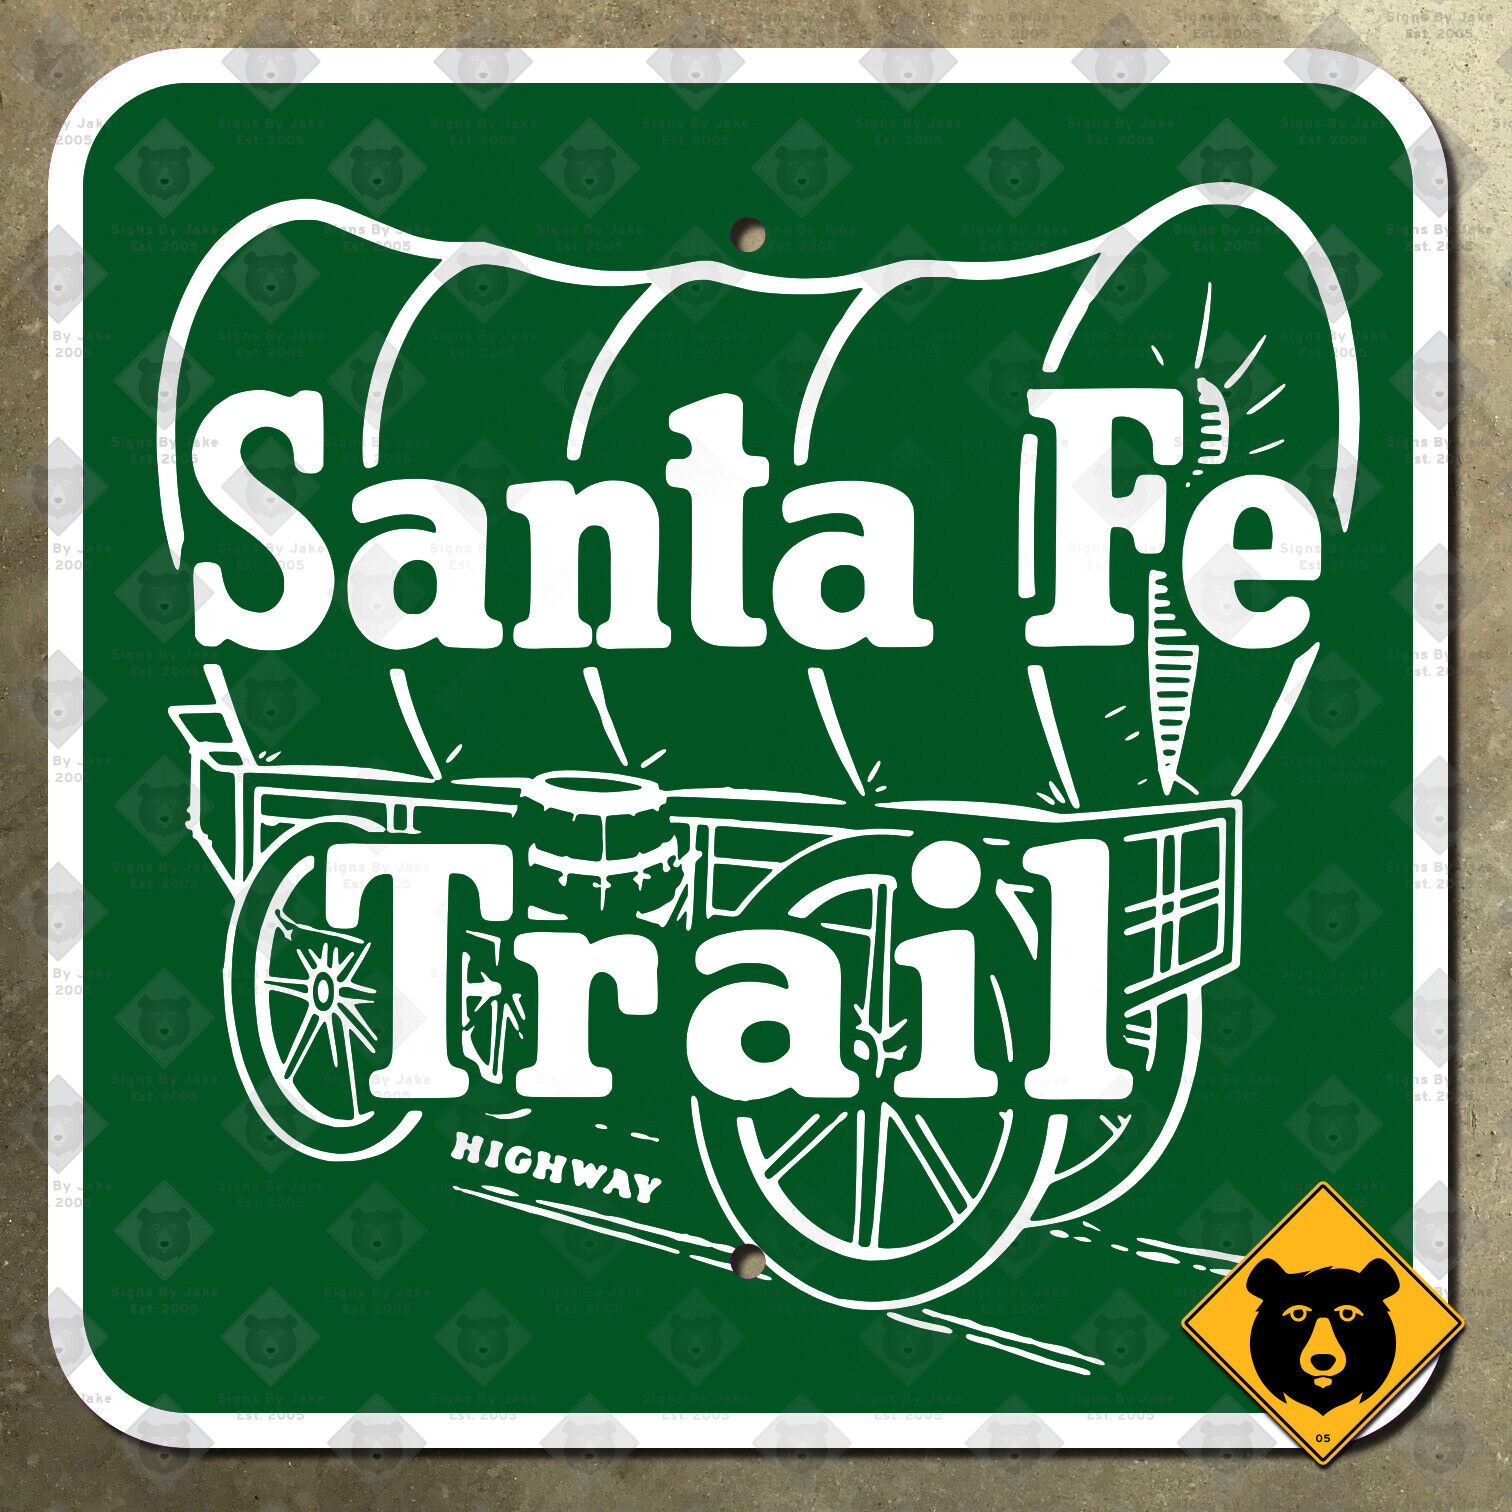 Kansas Santa Fe Trail highway marker road sign Conestoga wagon pioneer 1956 15